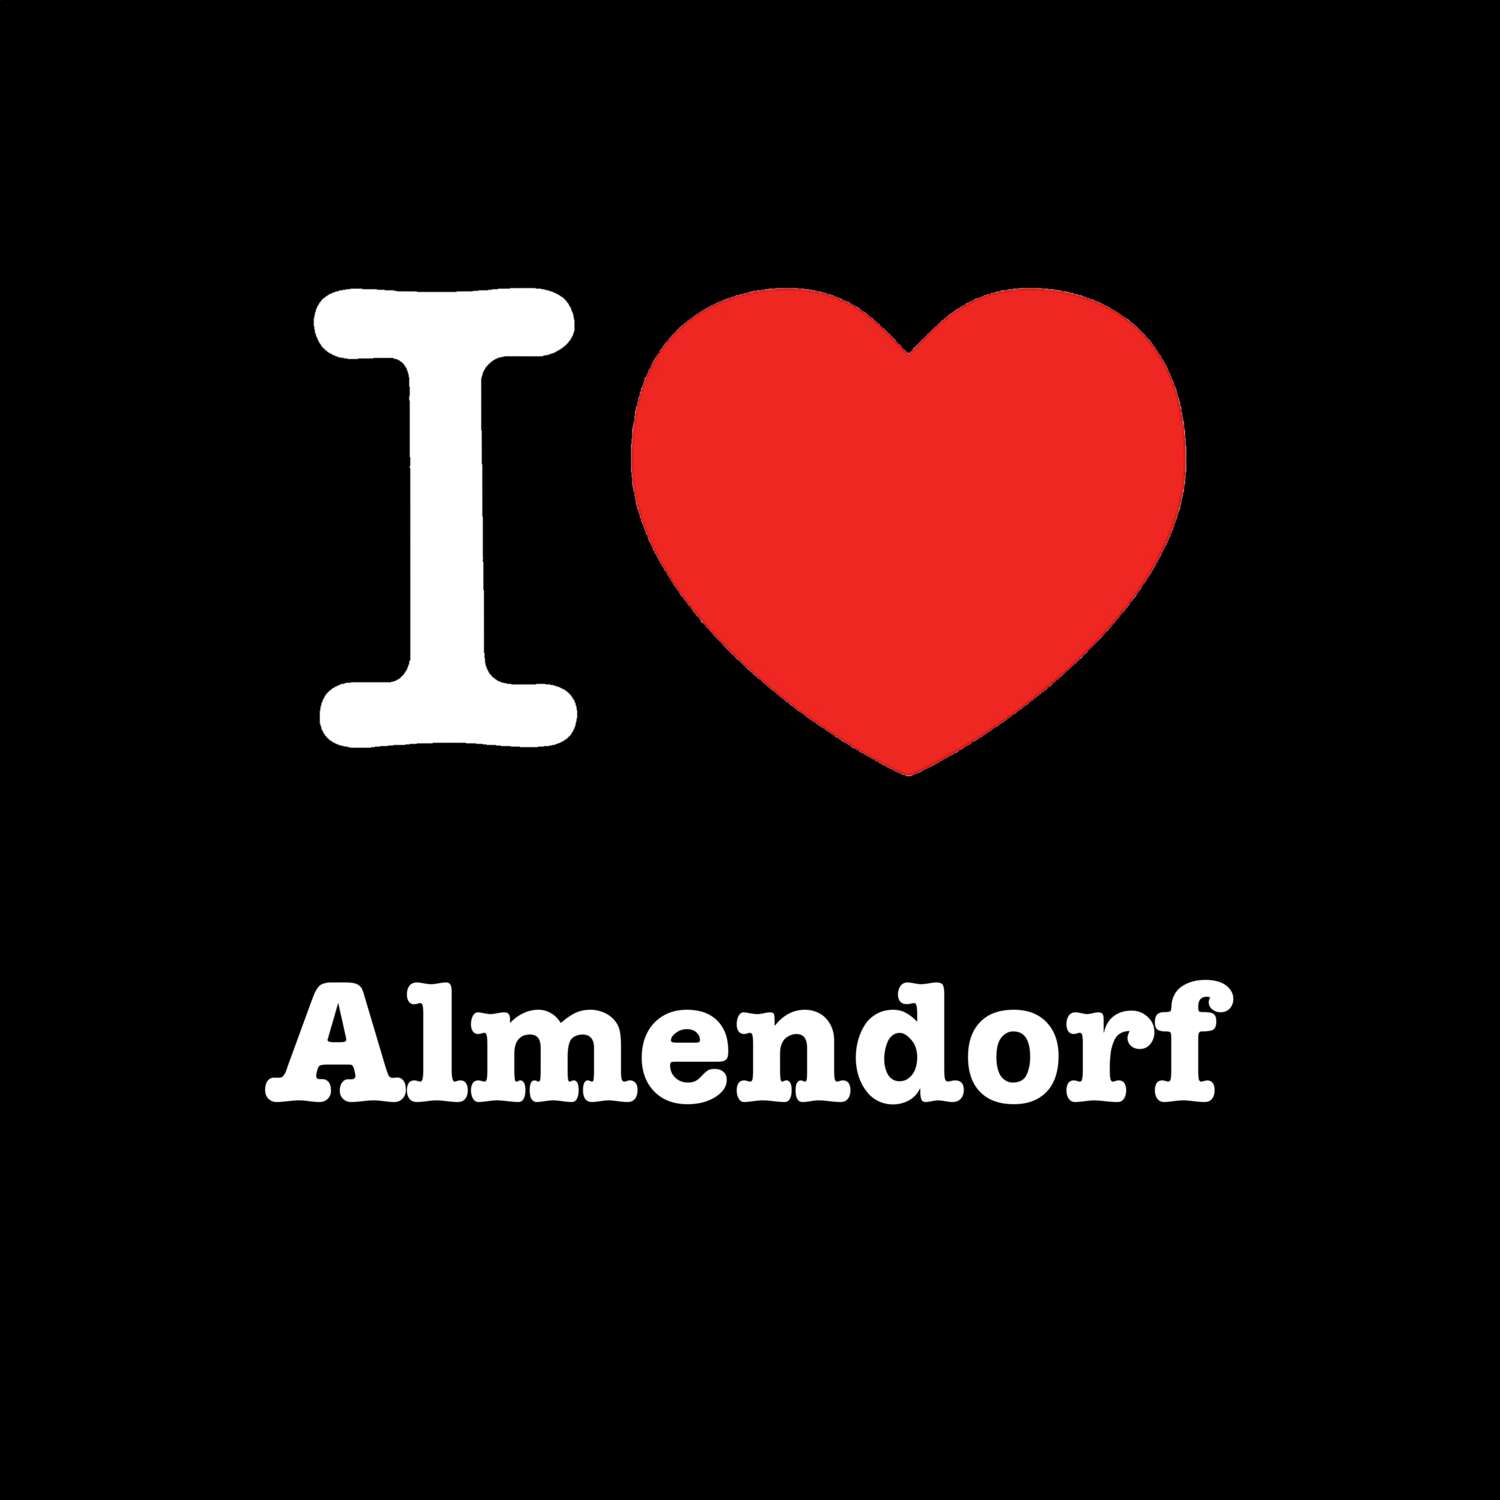 Almendorf T-Shirt »I love«